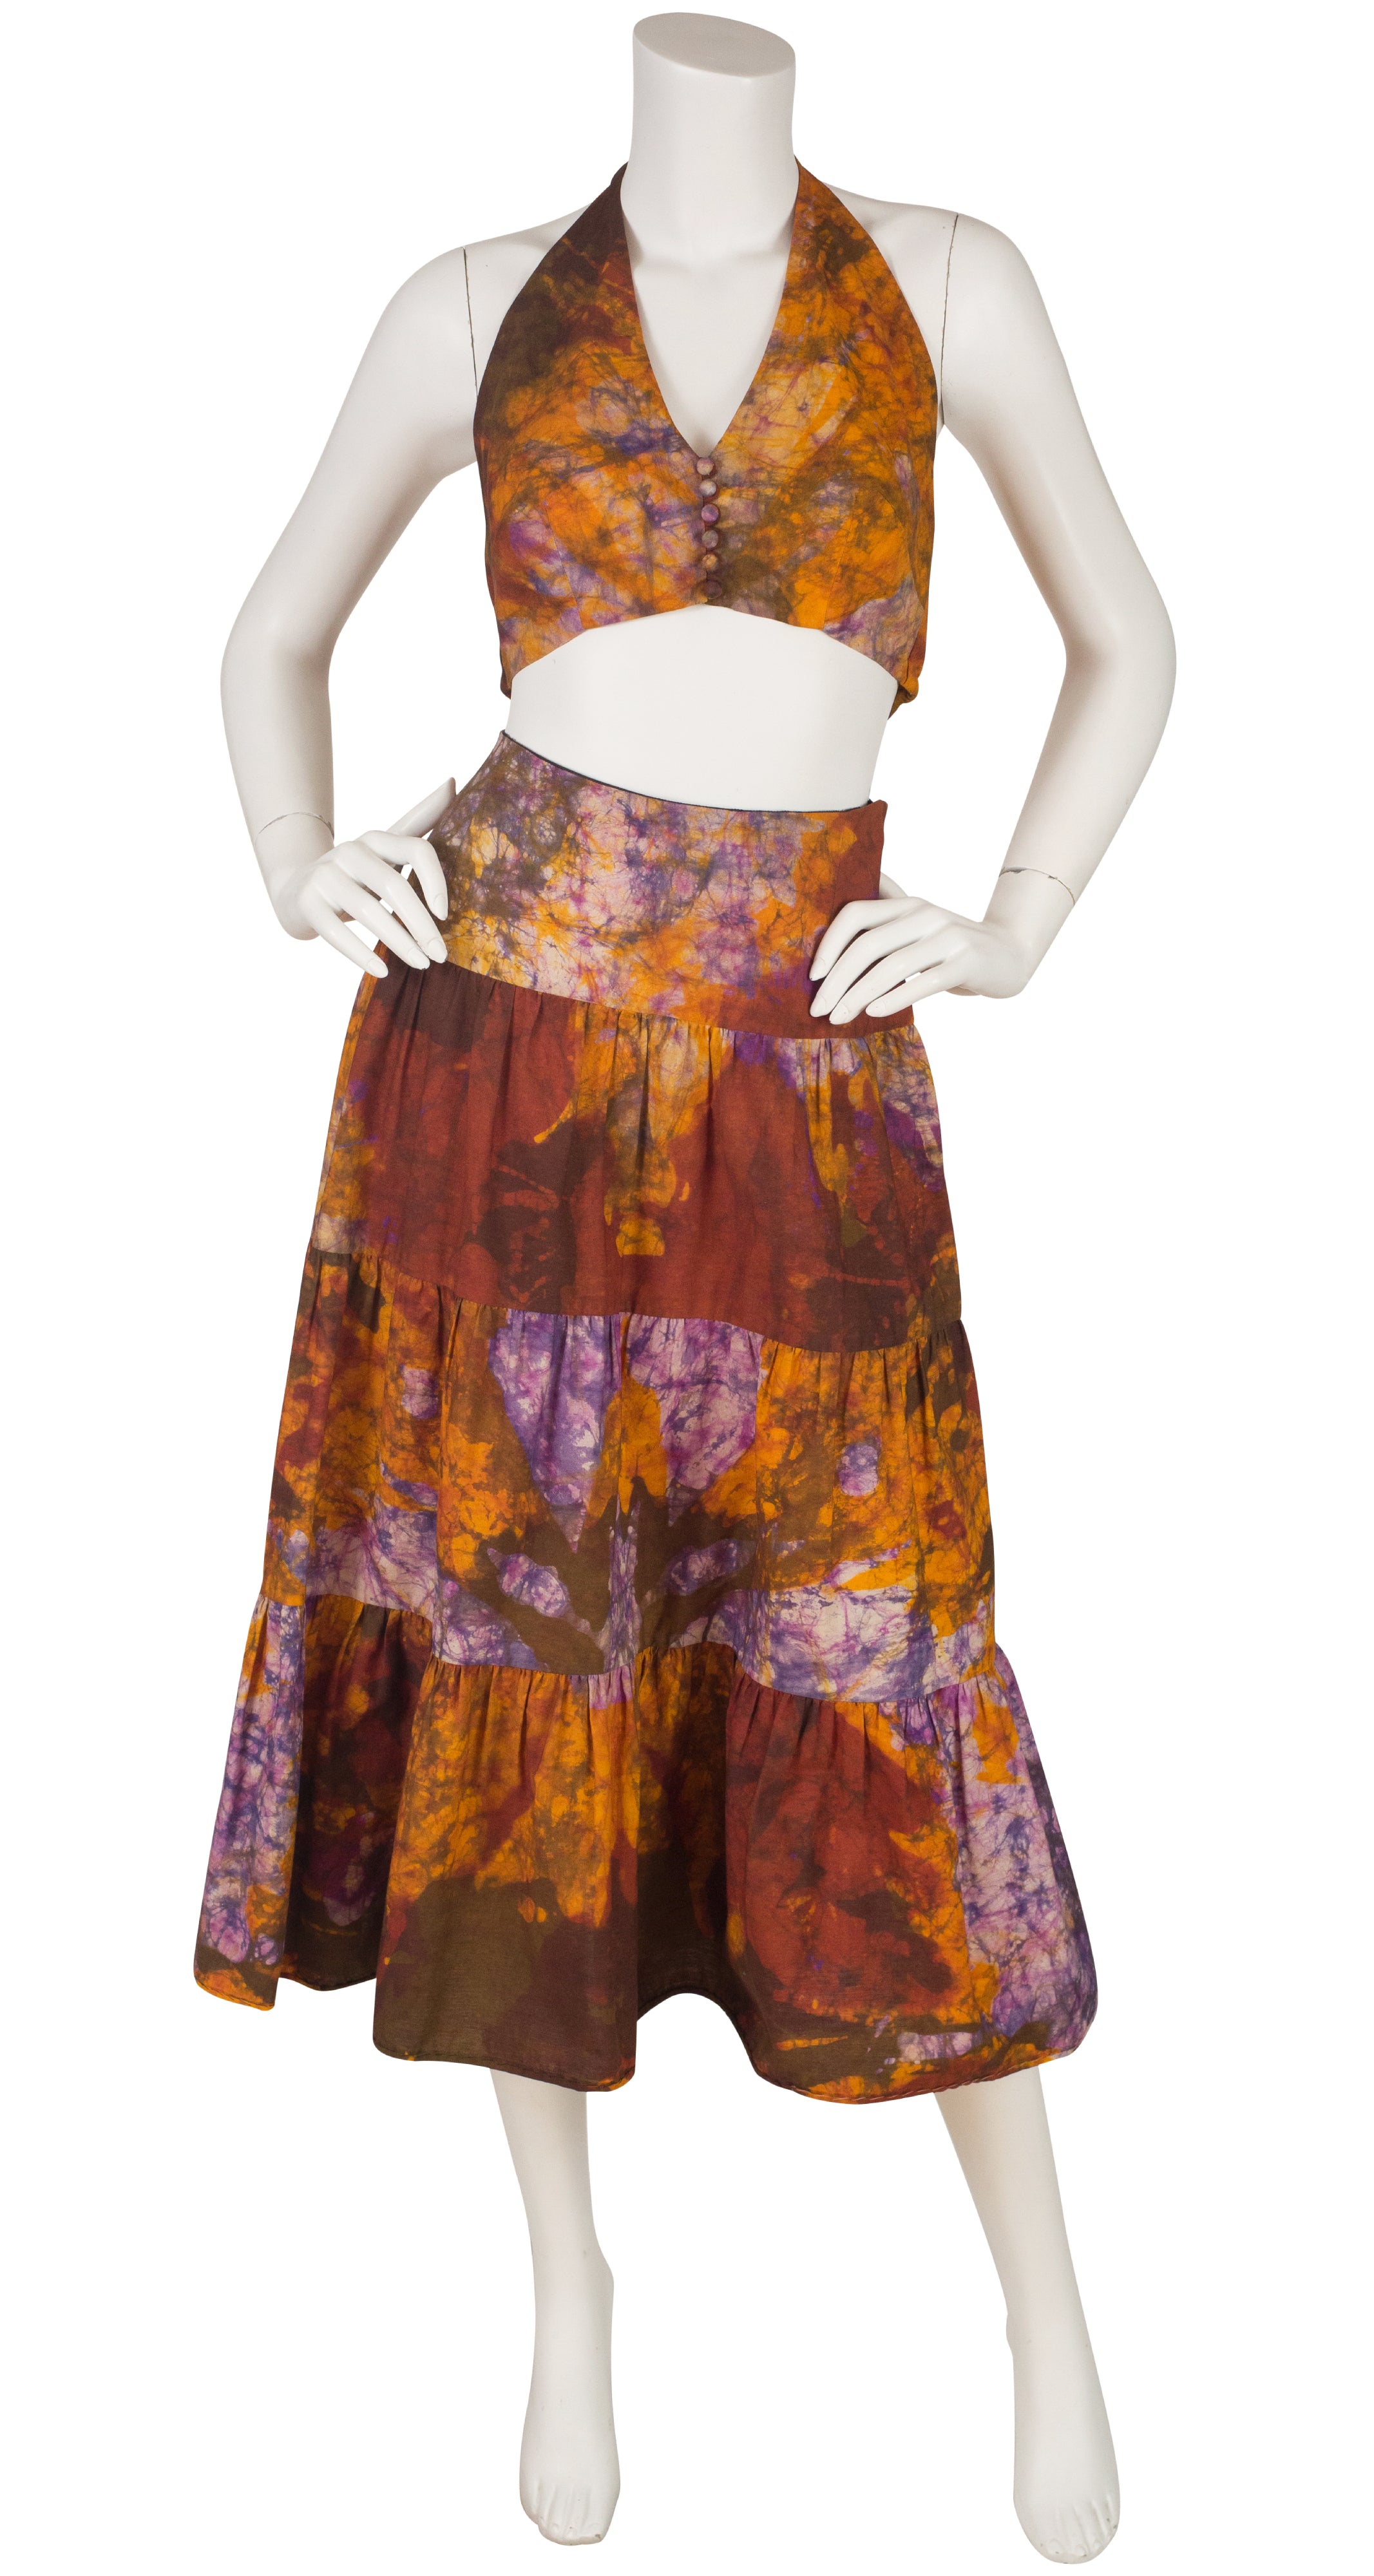 1970s Tie-Dye Cotton Halter Top & Skirt Set